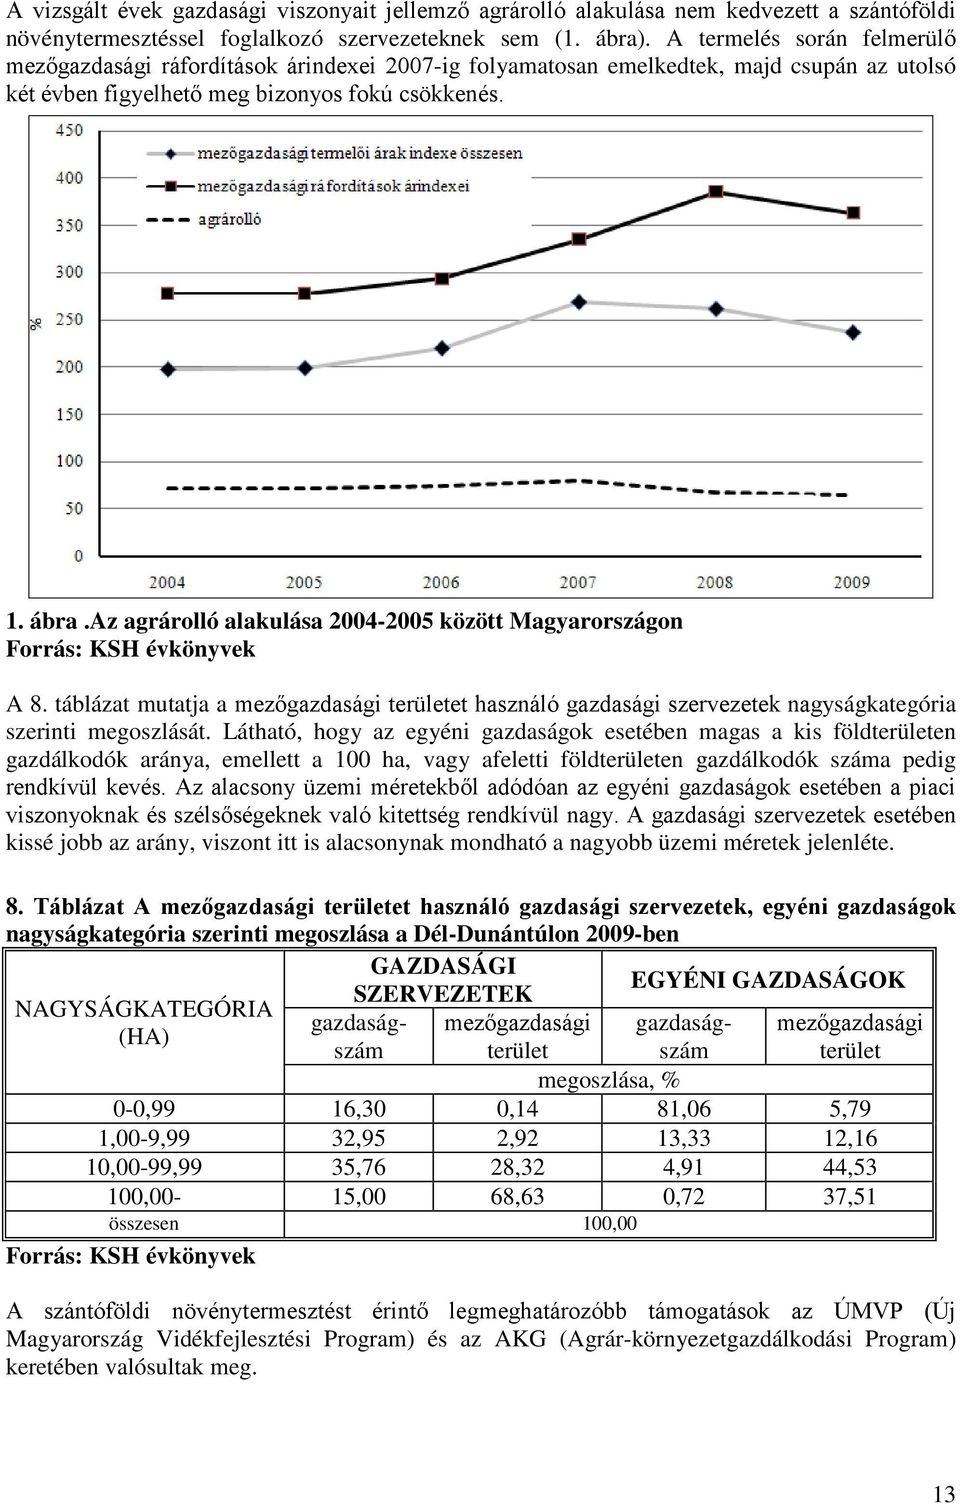 az agrárolló alakulása 2004-2005 között Magyarországon Forrás: KSH évkönyvek A 8. táblázat mutatja a mezőgazdasági területet használó gazdasági szervezetek nagyságkategória szerinti megoszlását.